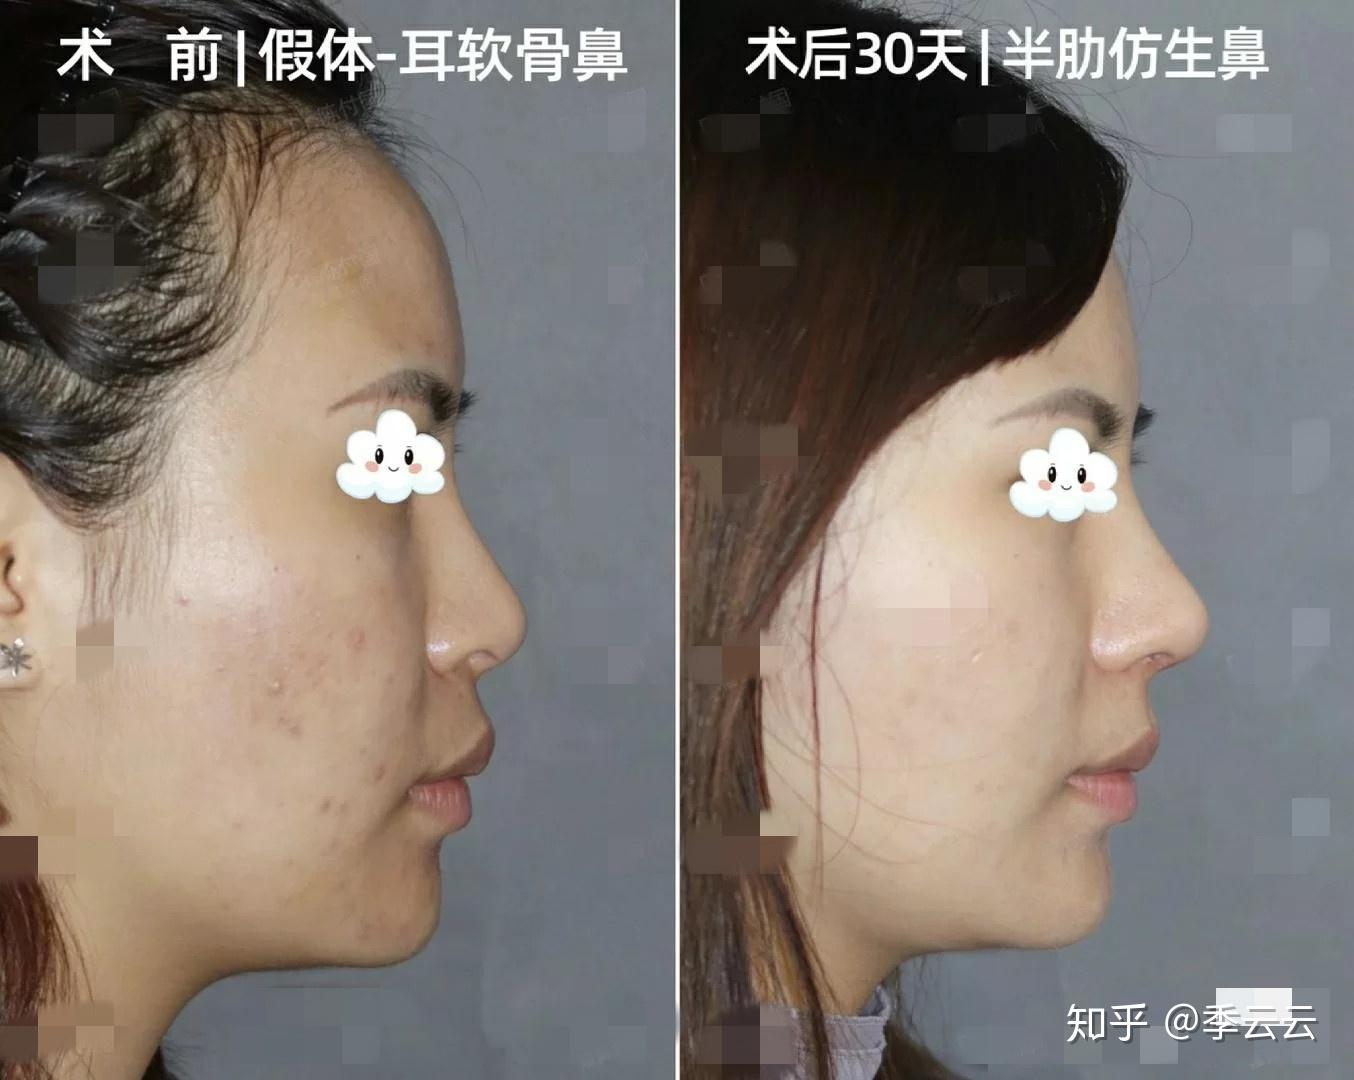 韩国李丙玟隆鼻失败修复实例,验证李丙玟做高难度鼻修复好,鼻部对比照-8682赴韩整形网